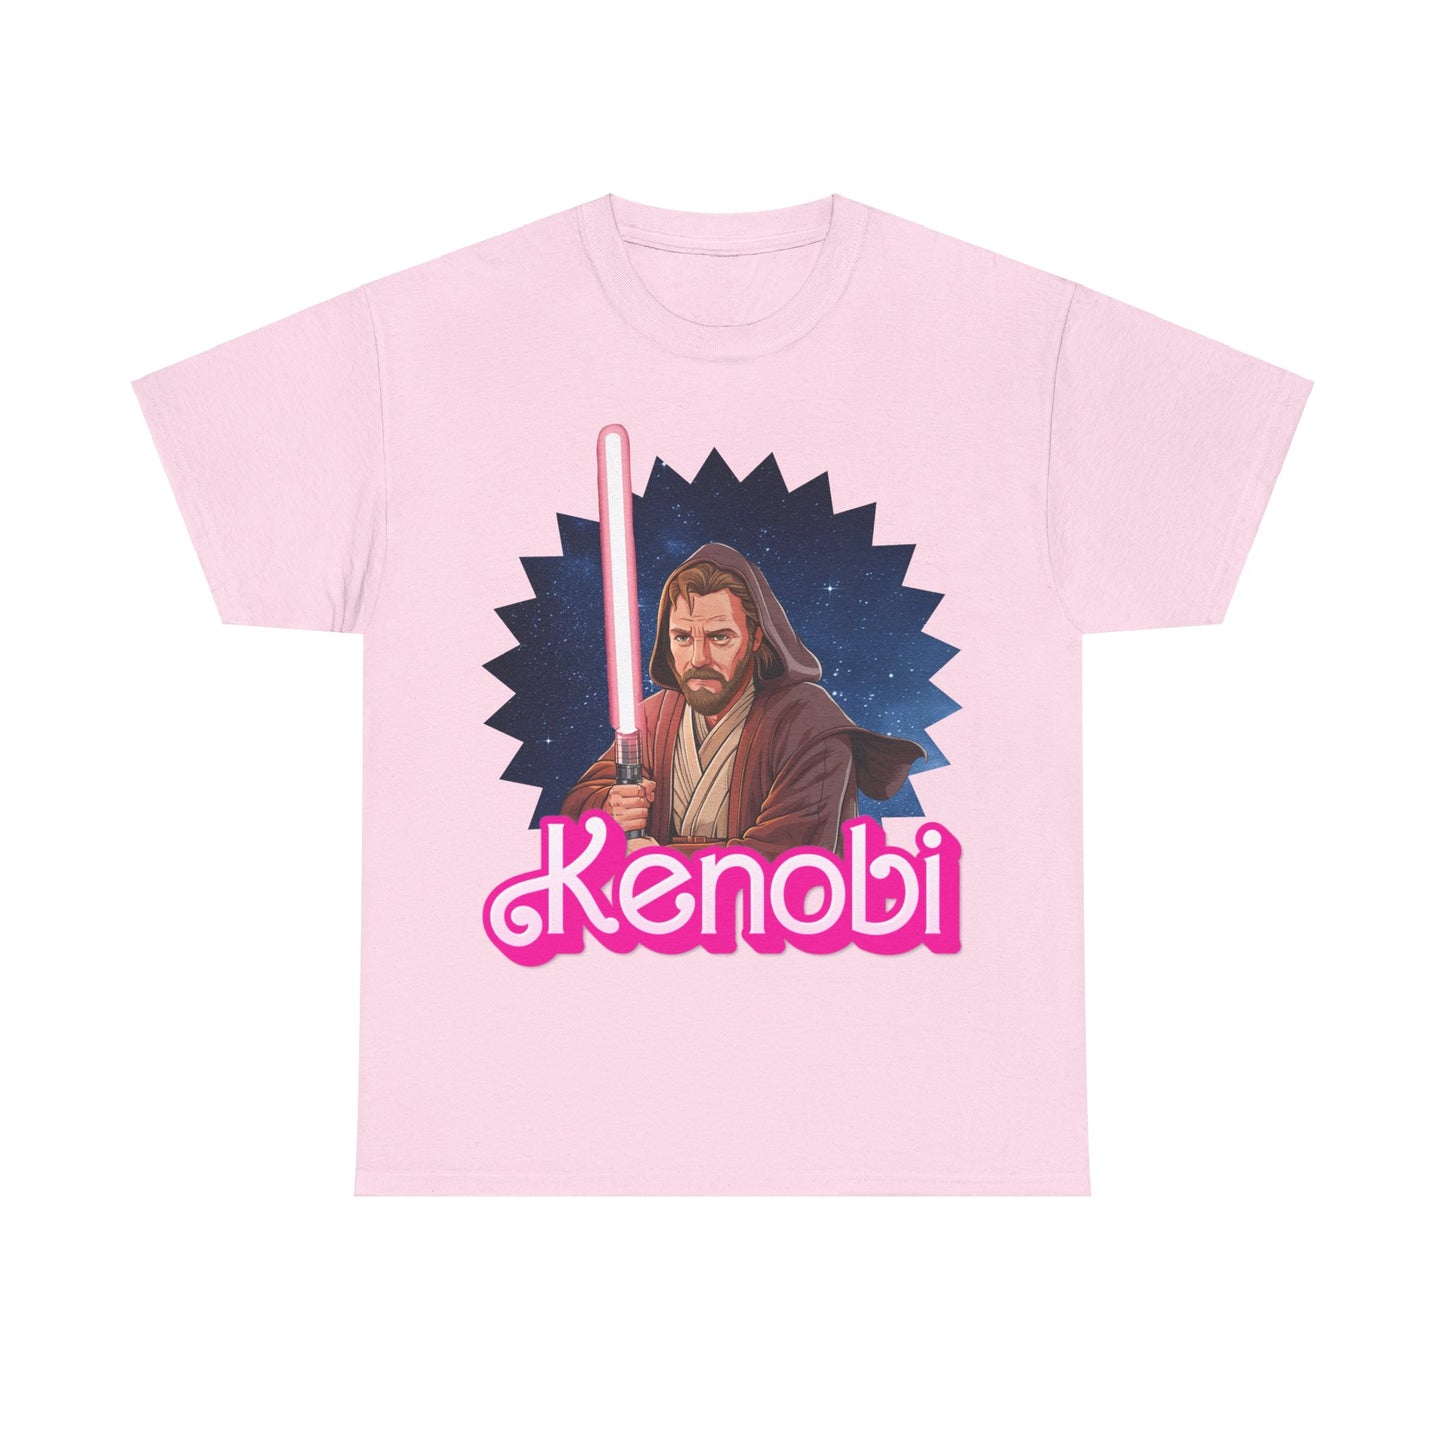 Obi-Wan Kenobi Ken Barbie Movie Star Wars Unisex Heavy Cotton Tee Next Cult Brand